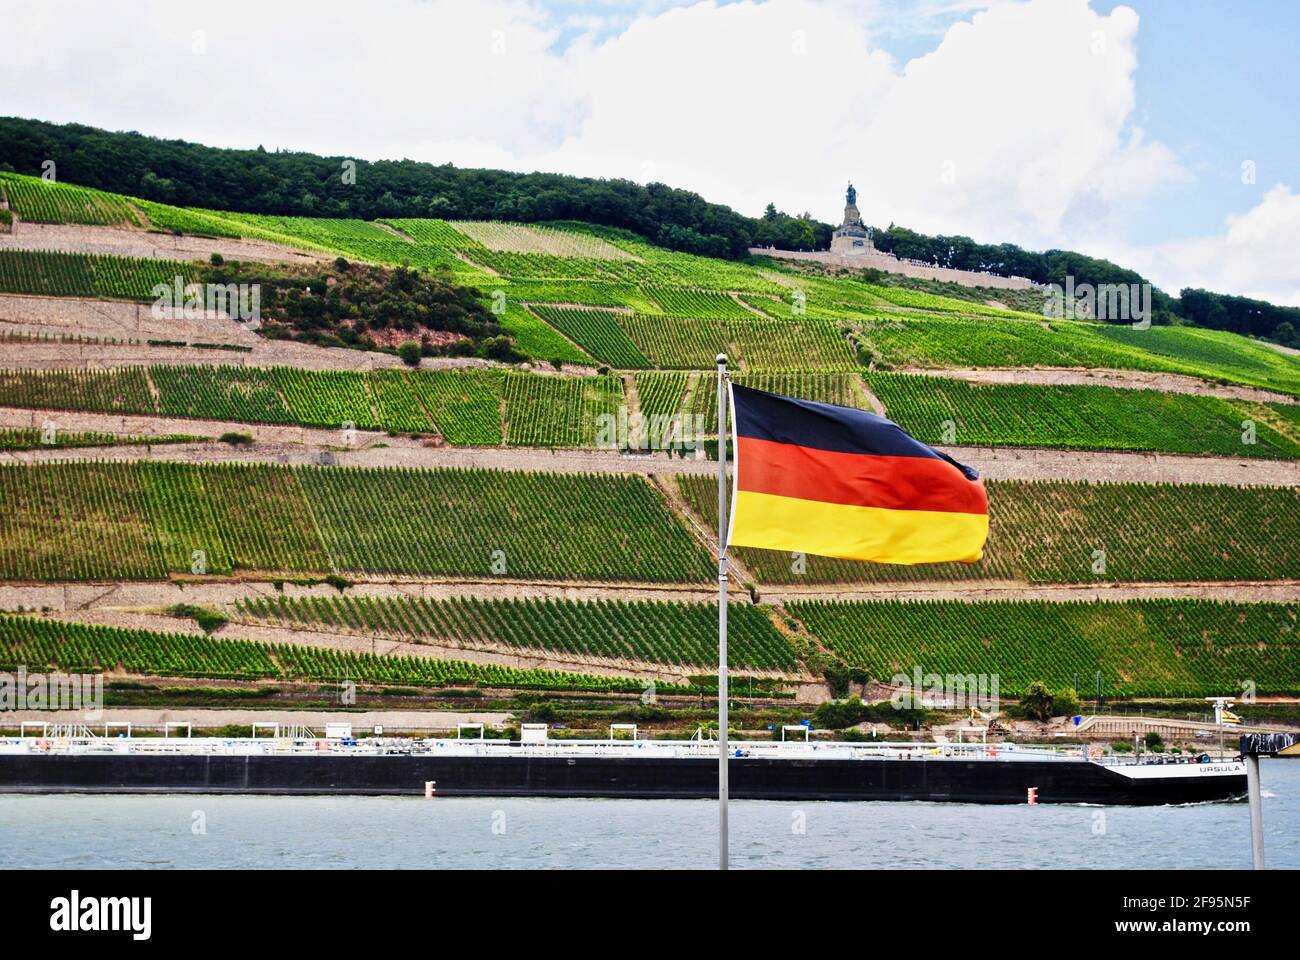 Bingen am Rhein, Allemagne: Rhin avec un bateau, drapeau allemand et vignobles. Niederwalddenkmal, statue de Germania, monument de la réunification allemande. Banque D'Images